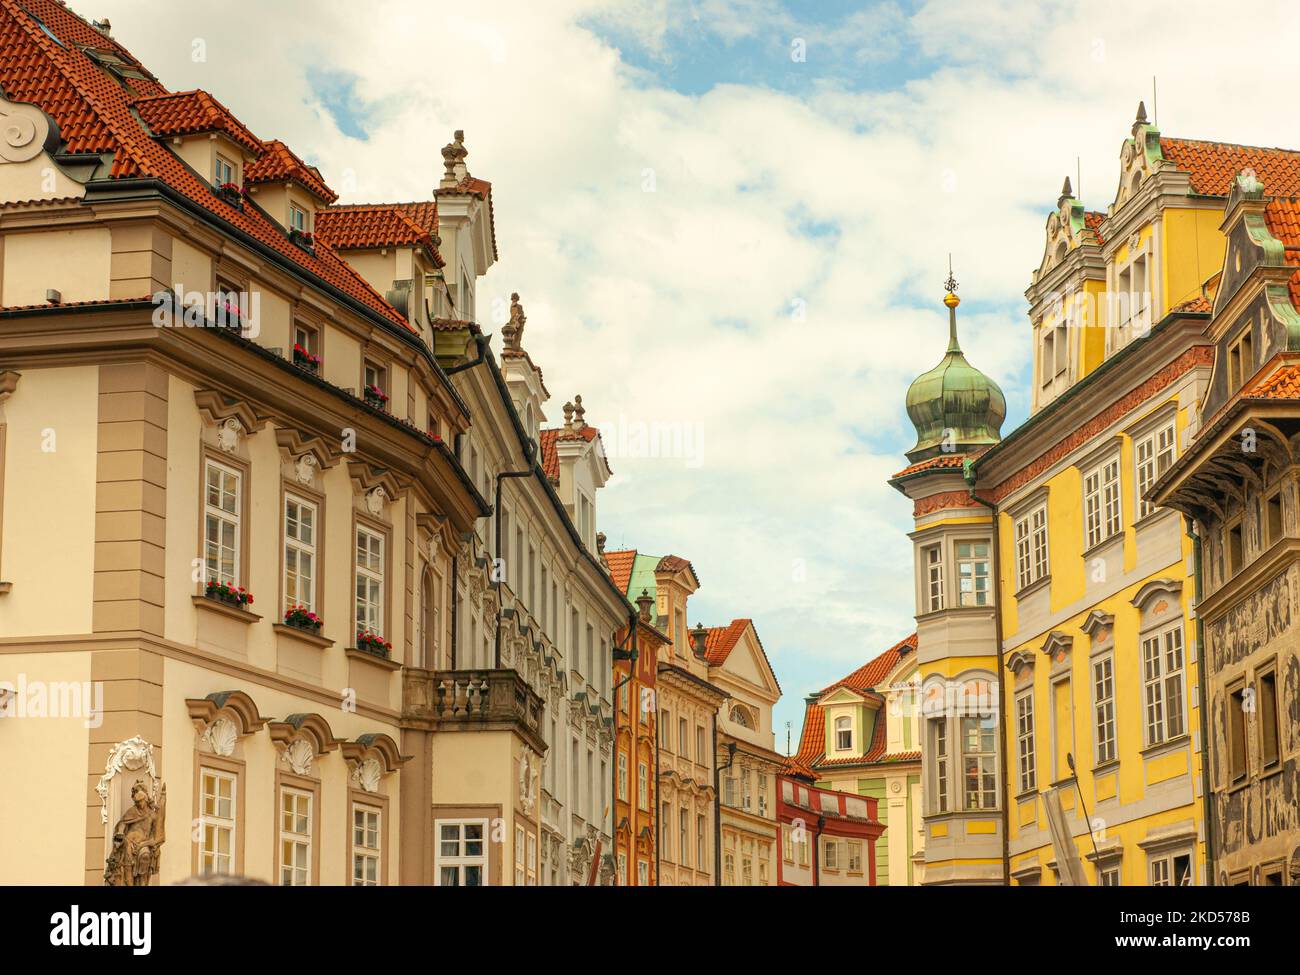 Die Gebäude in der Prager Altstadt sind dicht beieinander, die roten Dächer und Fassaden sind hell, sauber und farbenfroh. Die Architektur ist mittelalterlich mit charmanten Schnickschnack. Stockfoto